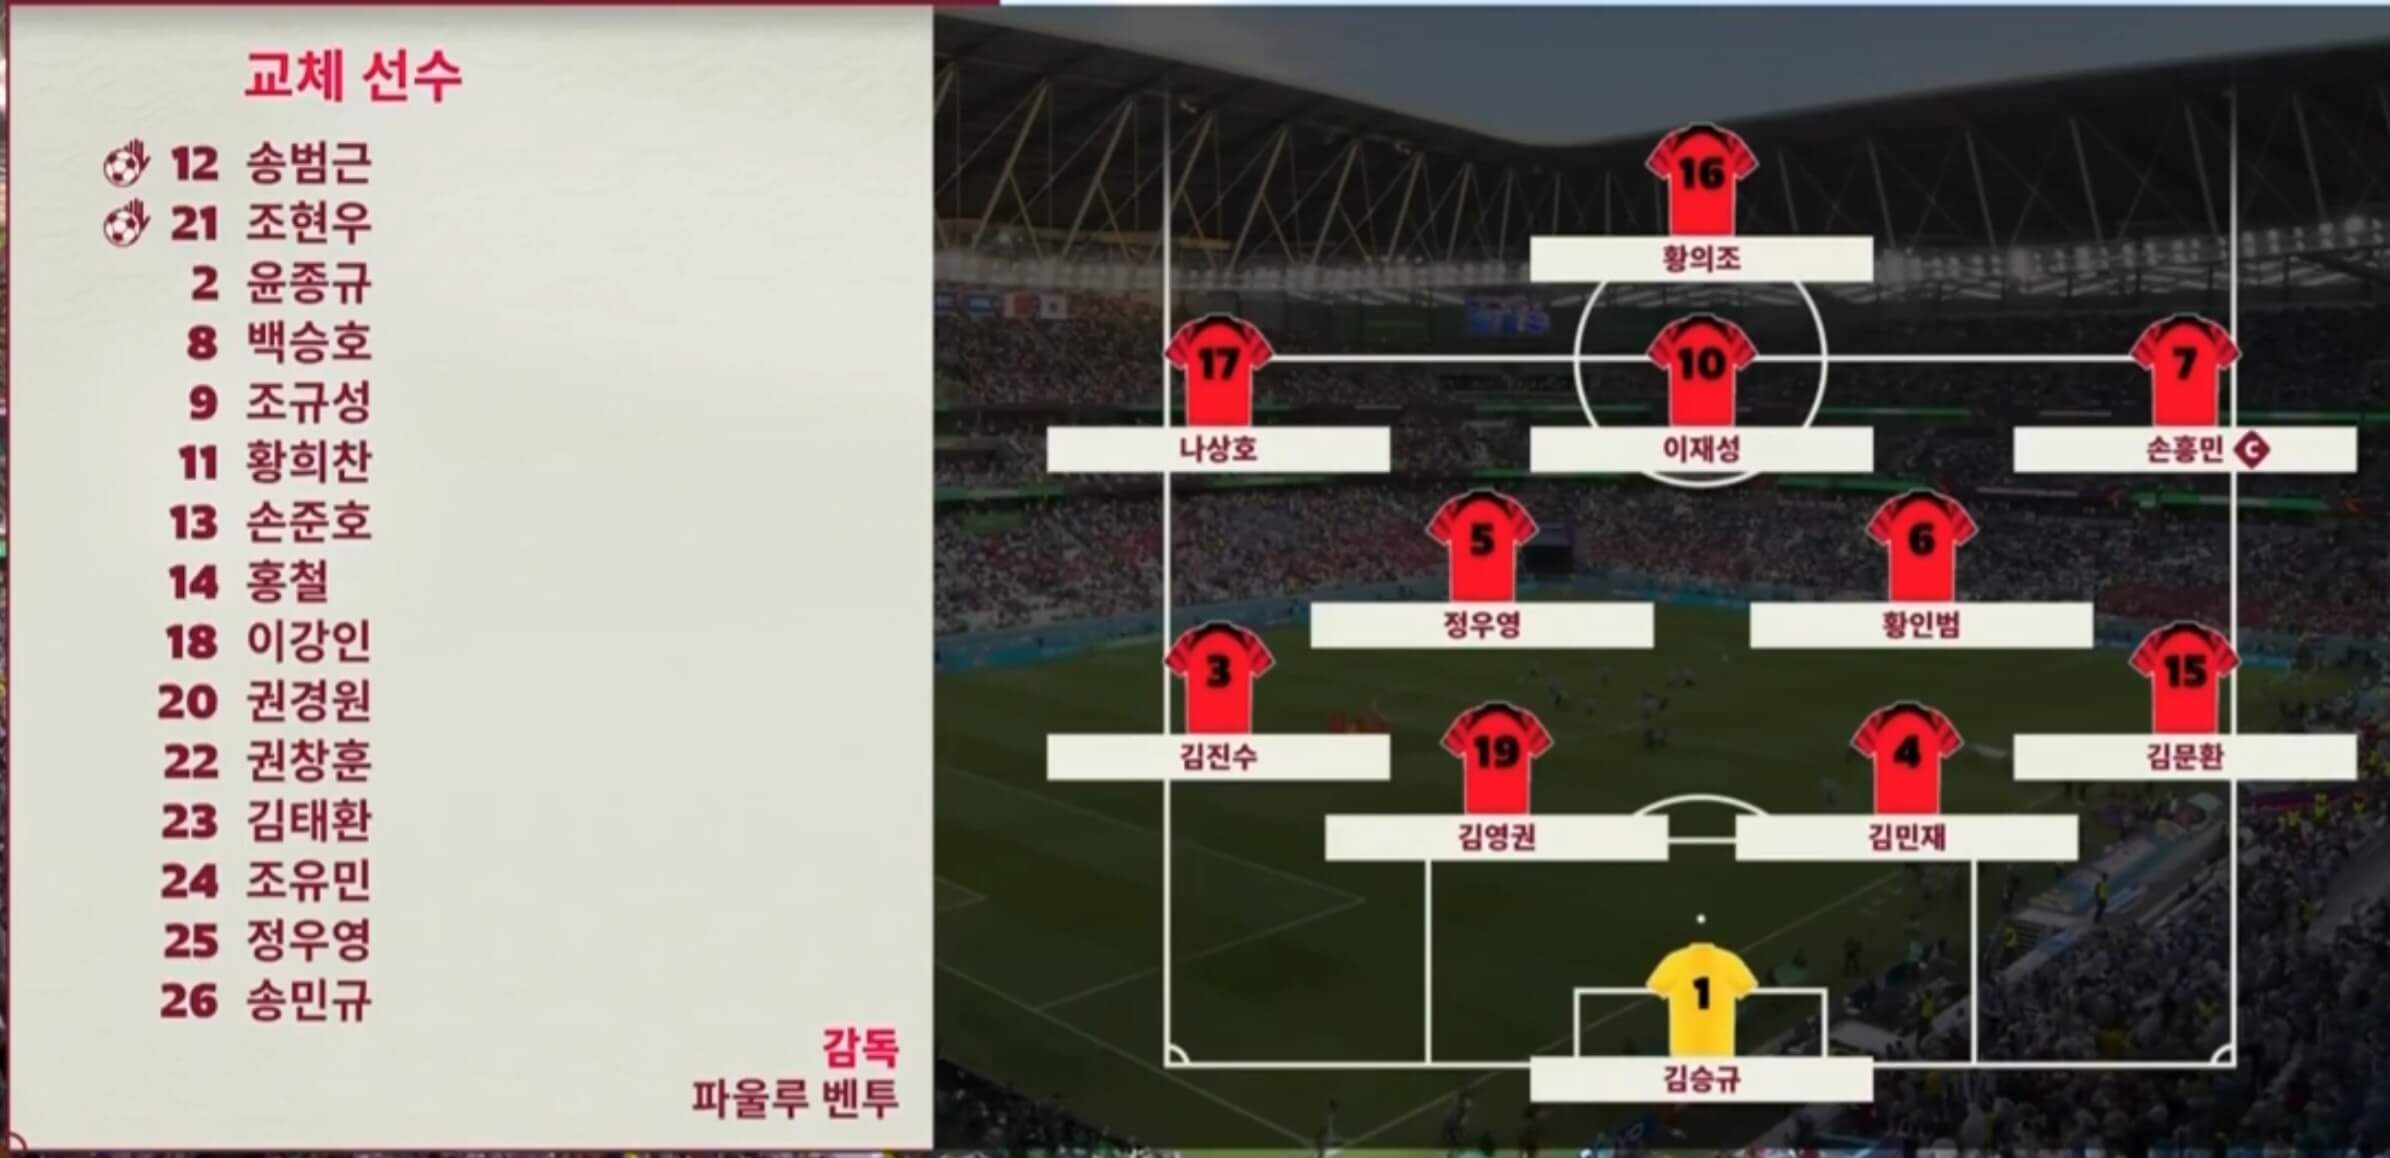 황의조 선수가 탑포지션인 4-2-3-1 포메이션을 구성한 한국 대표팀 스쿼드